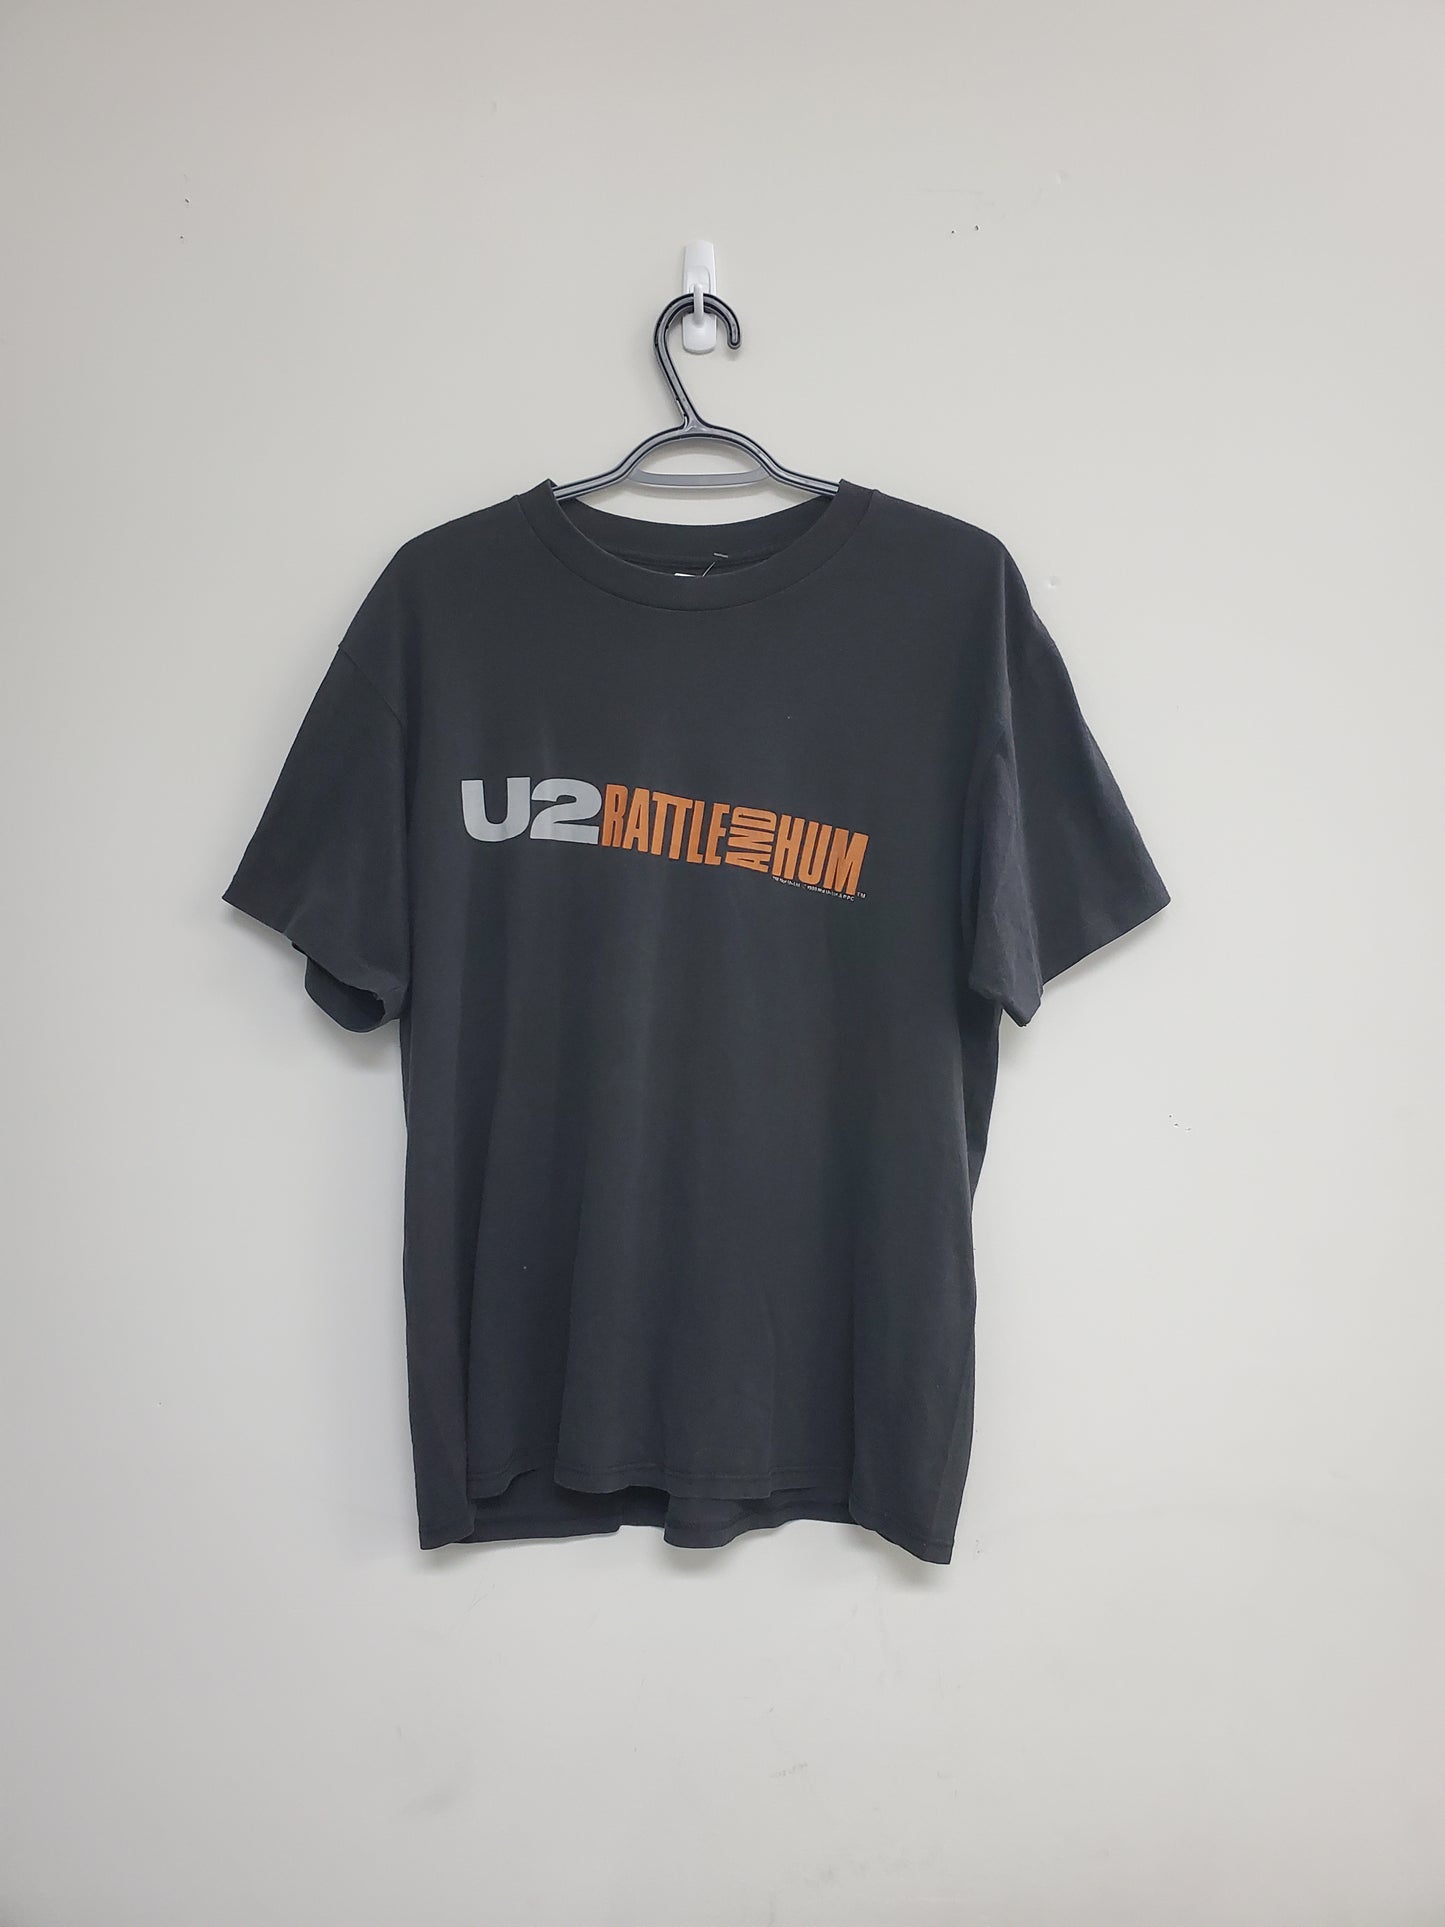 Mens 1988 U2 T-Shirt Fits Medium